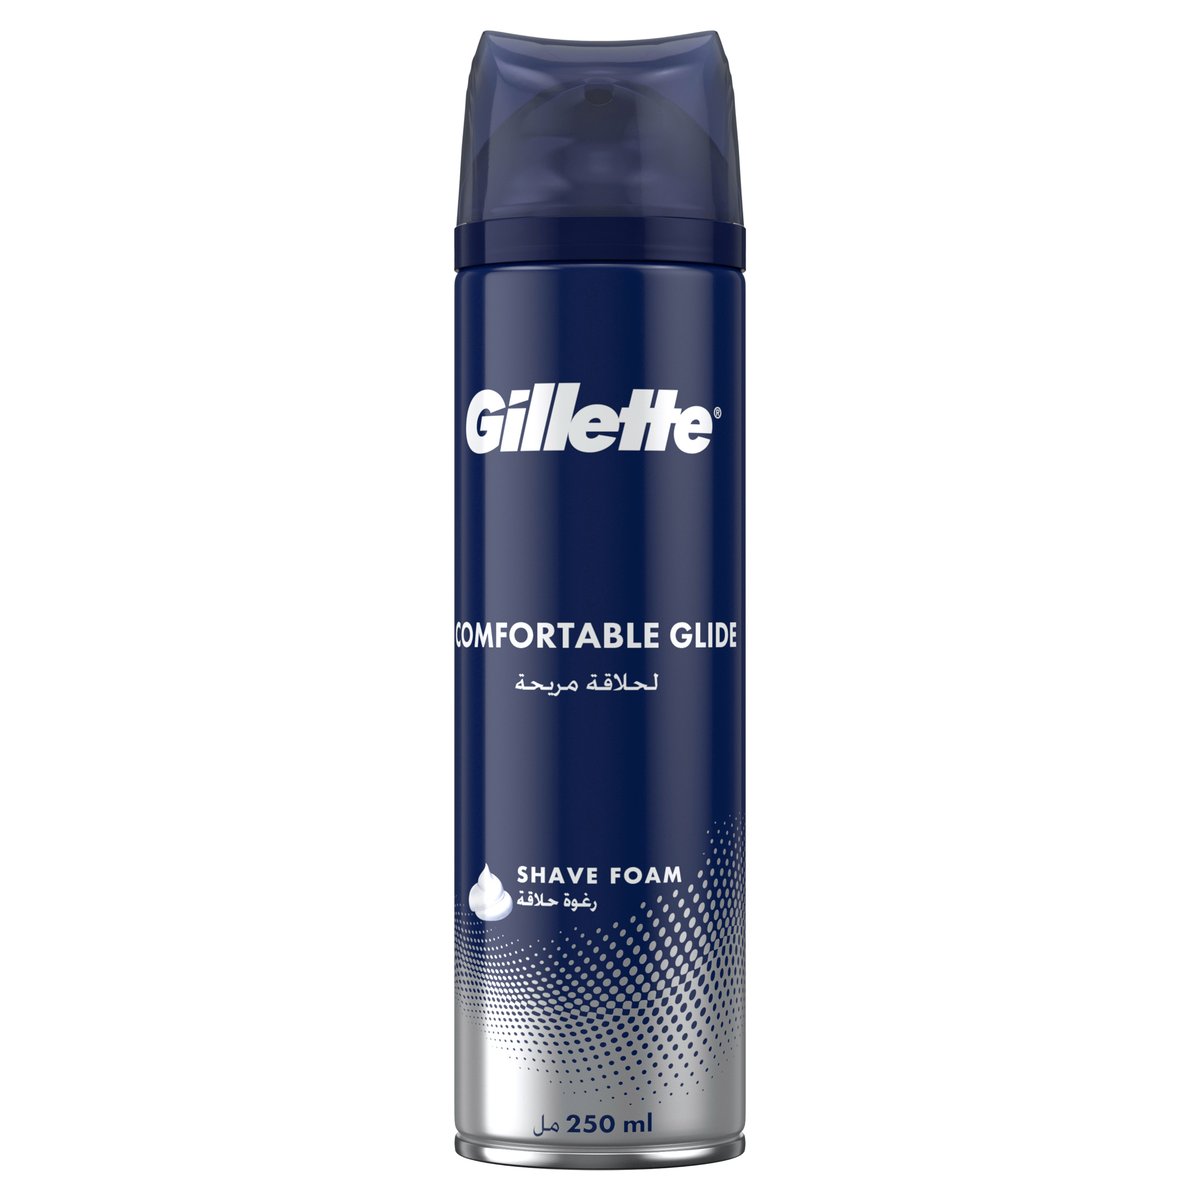 Gillette Shave Foam Comfortable Glide 250 ml